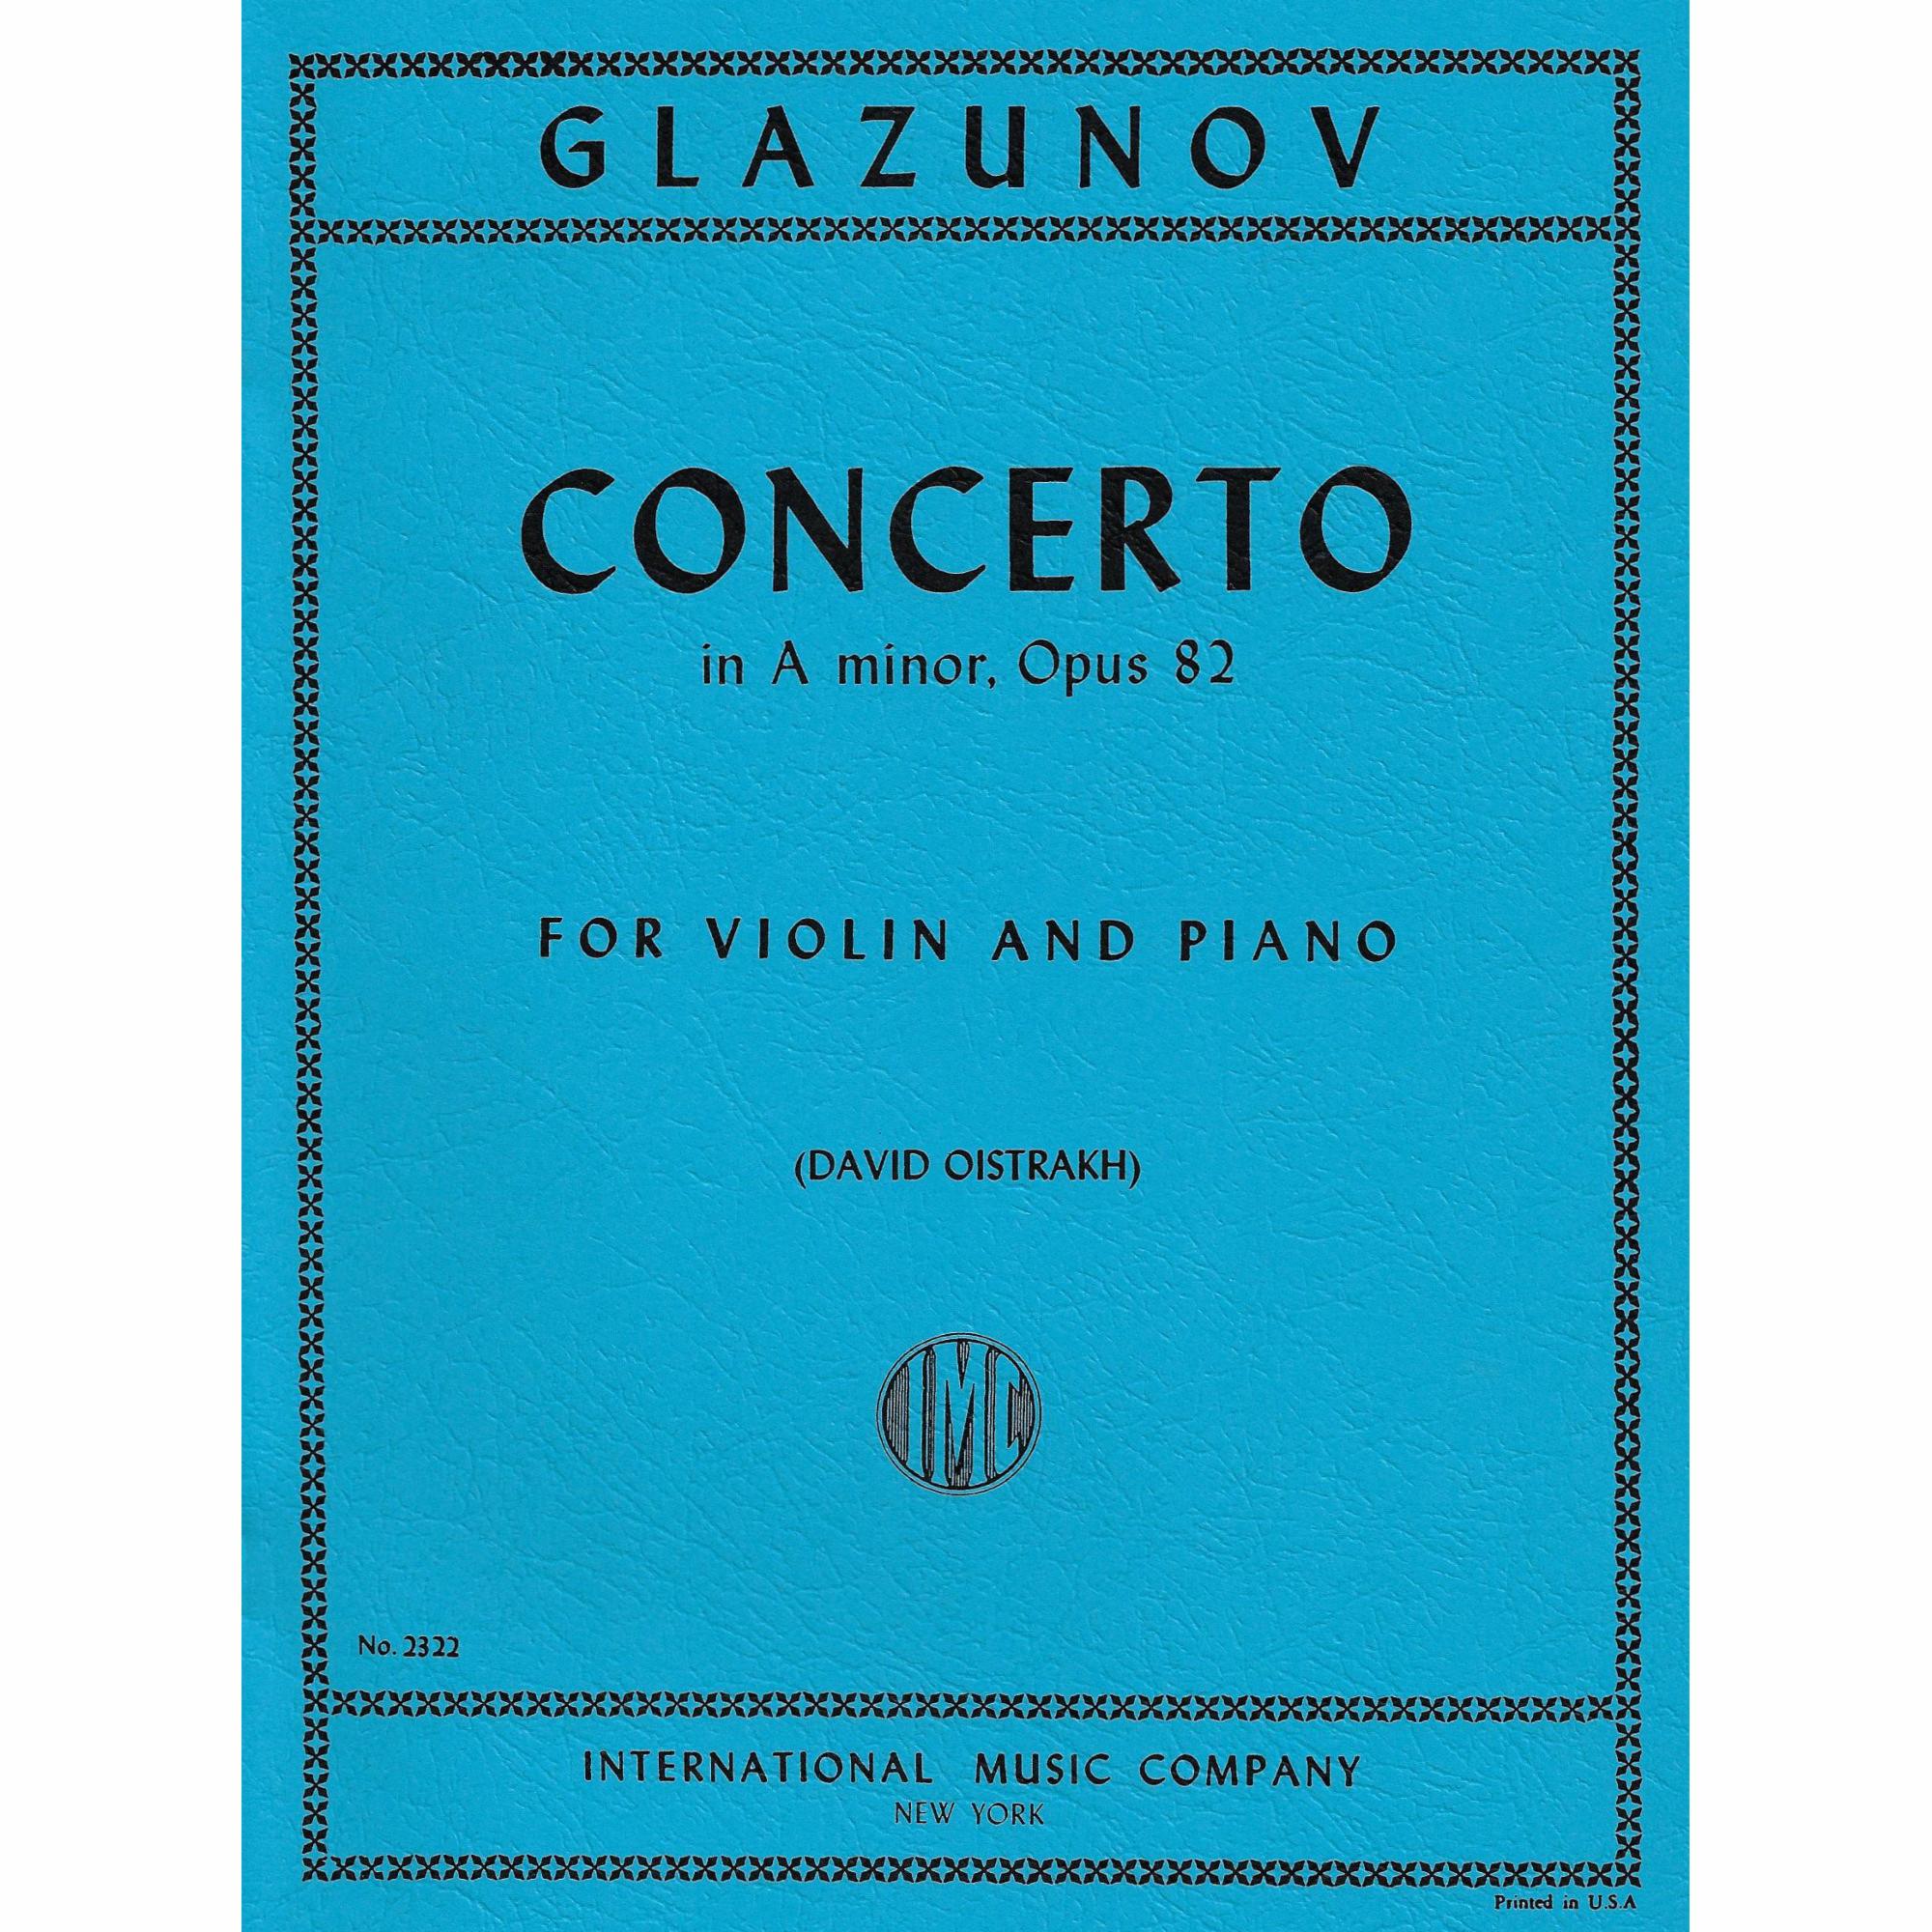 Glazunov -- Concerto in A Minor, Op. 82 for Violin and Piano